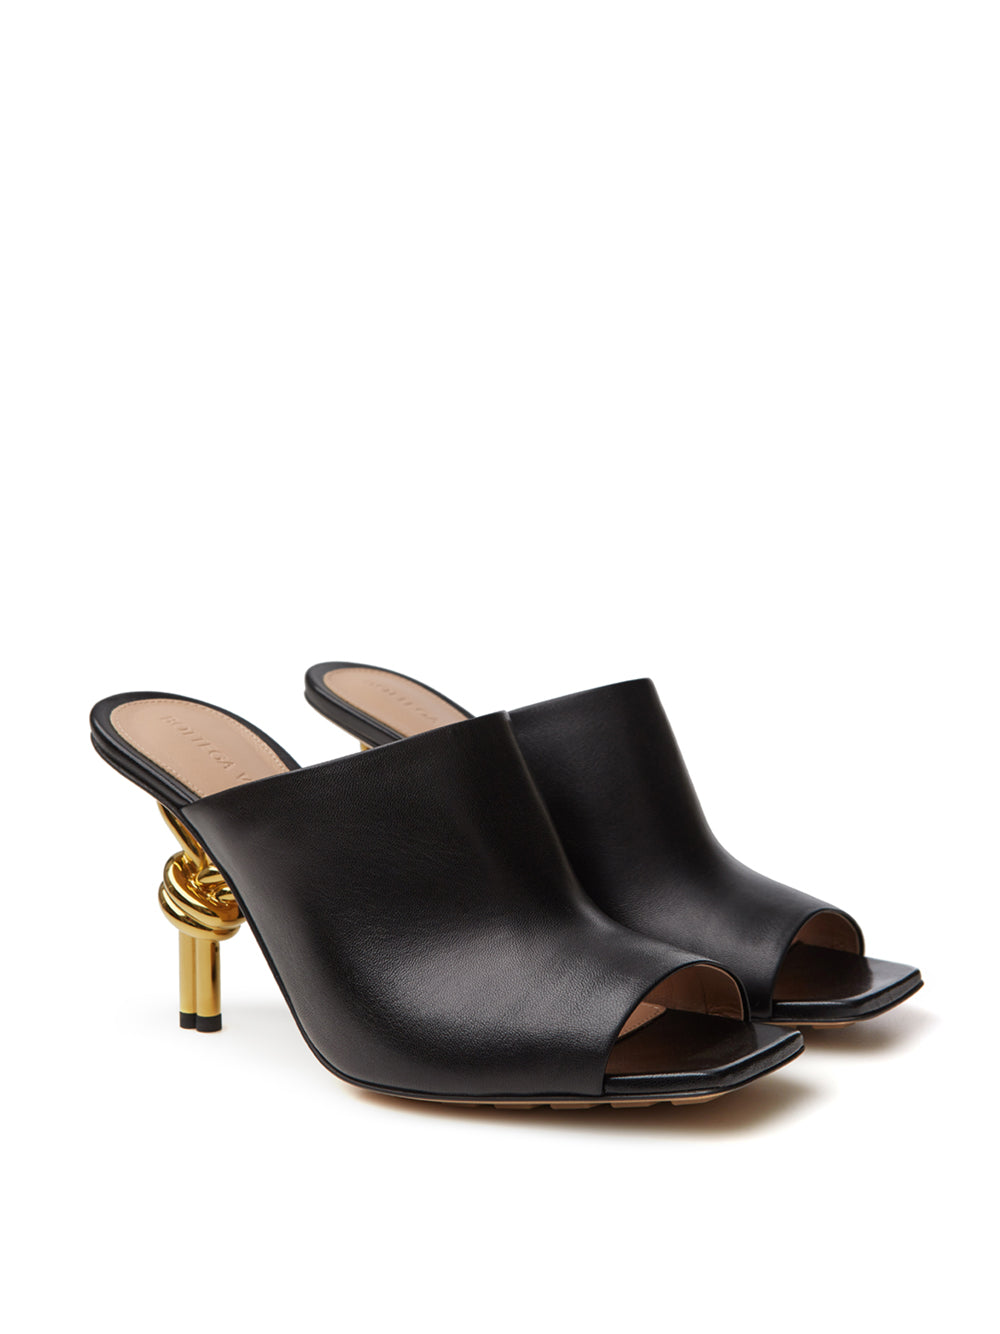 Bottega Veneta Black Leather Mule 'Knot' Sandal